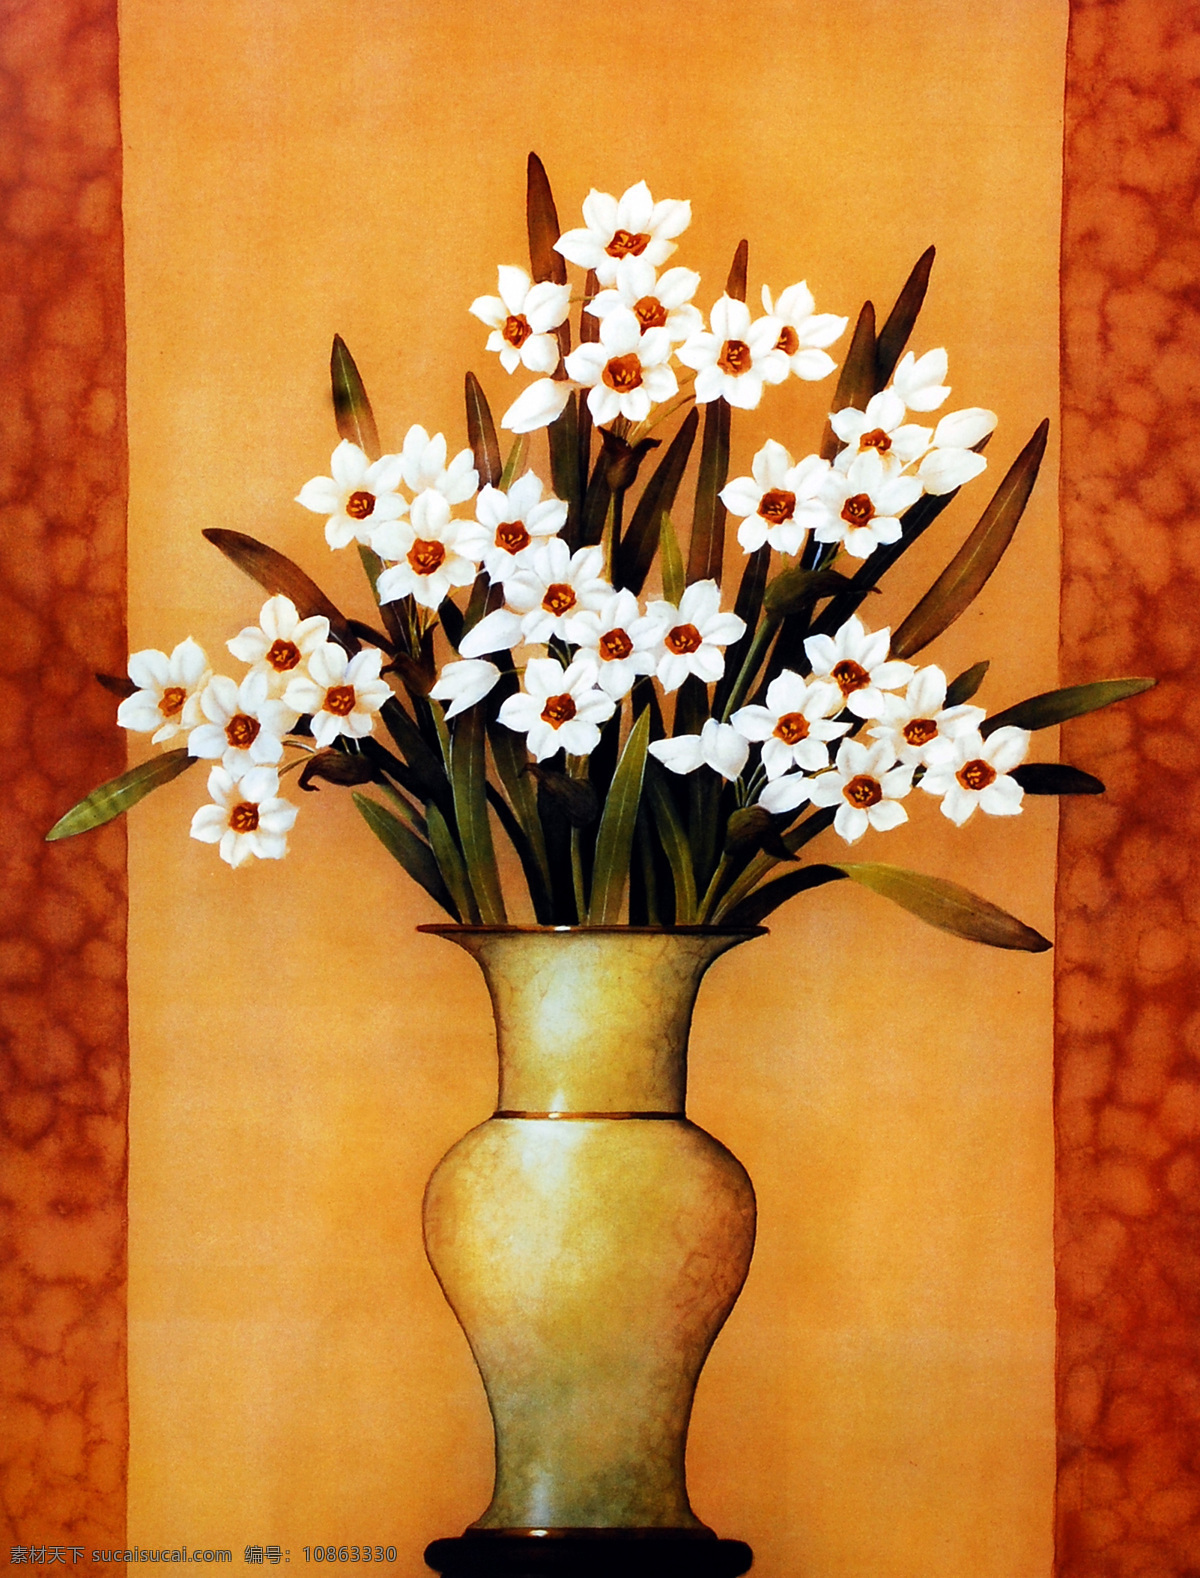 花瓶 里 白色 花朵 无框画 花卉 装饰画 油画 白色花 壁画 挂画 墙画 挂板 绘画书法 文化艺术 书画文字